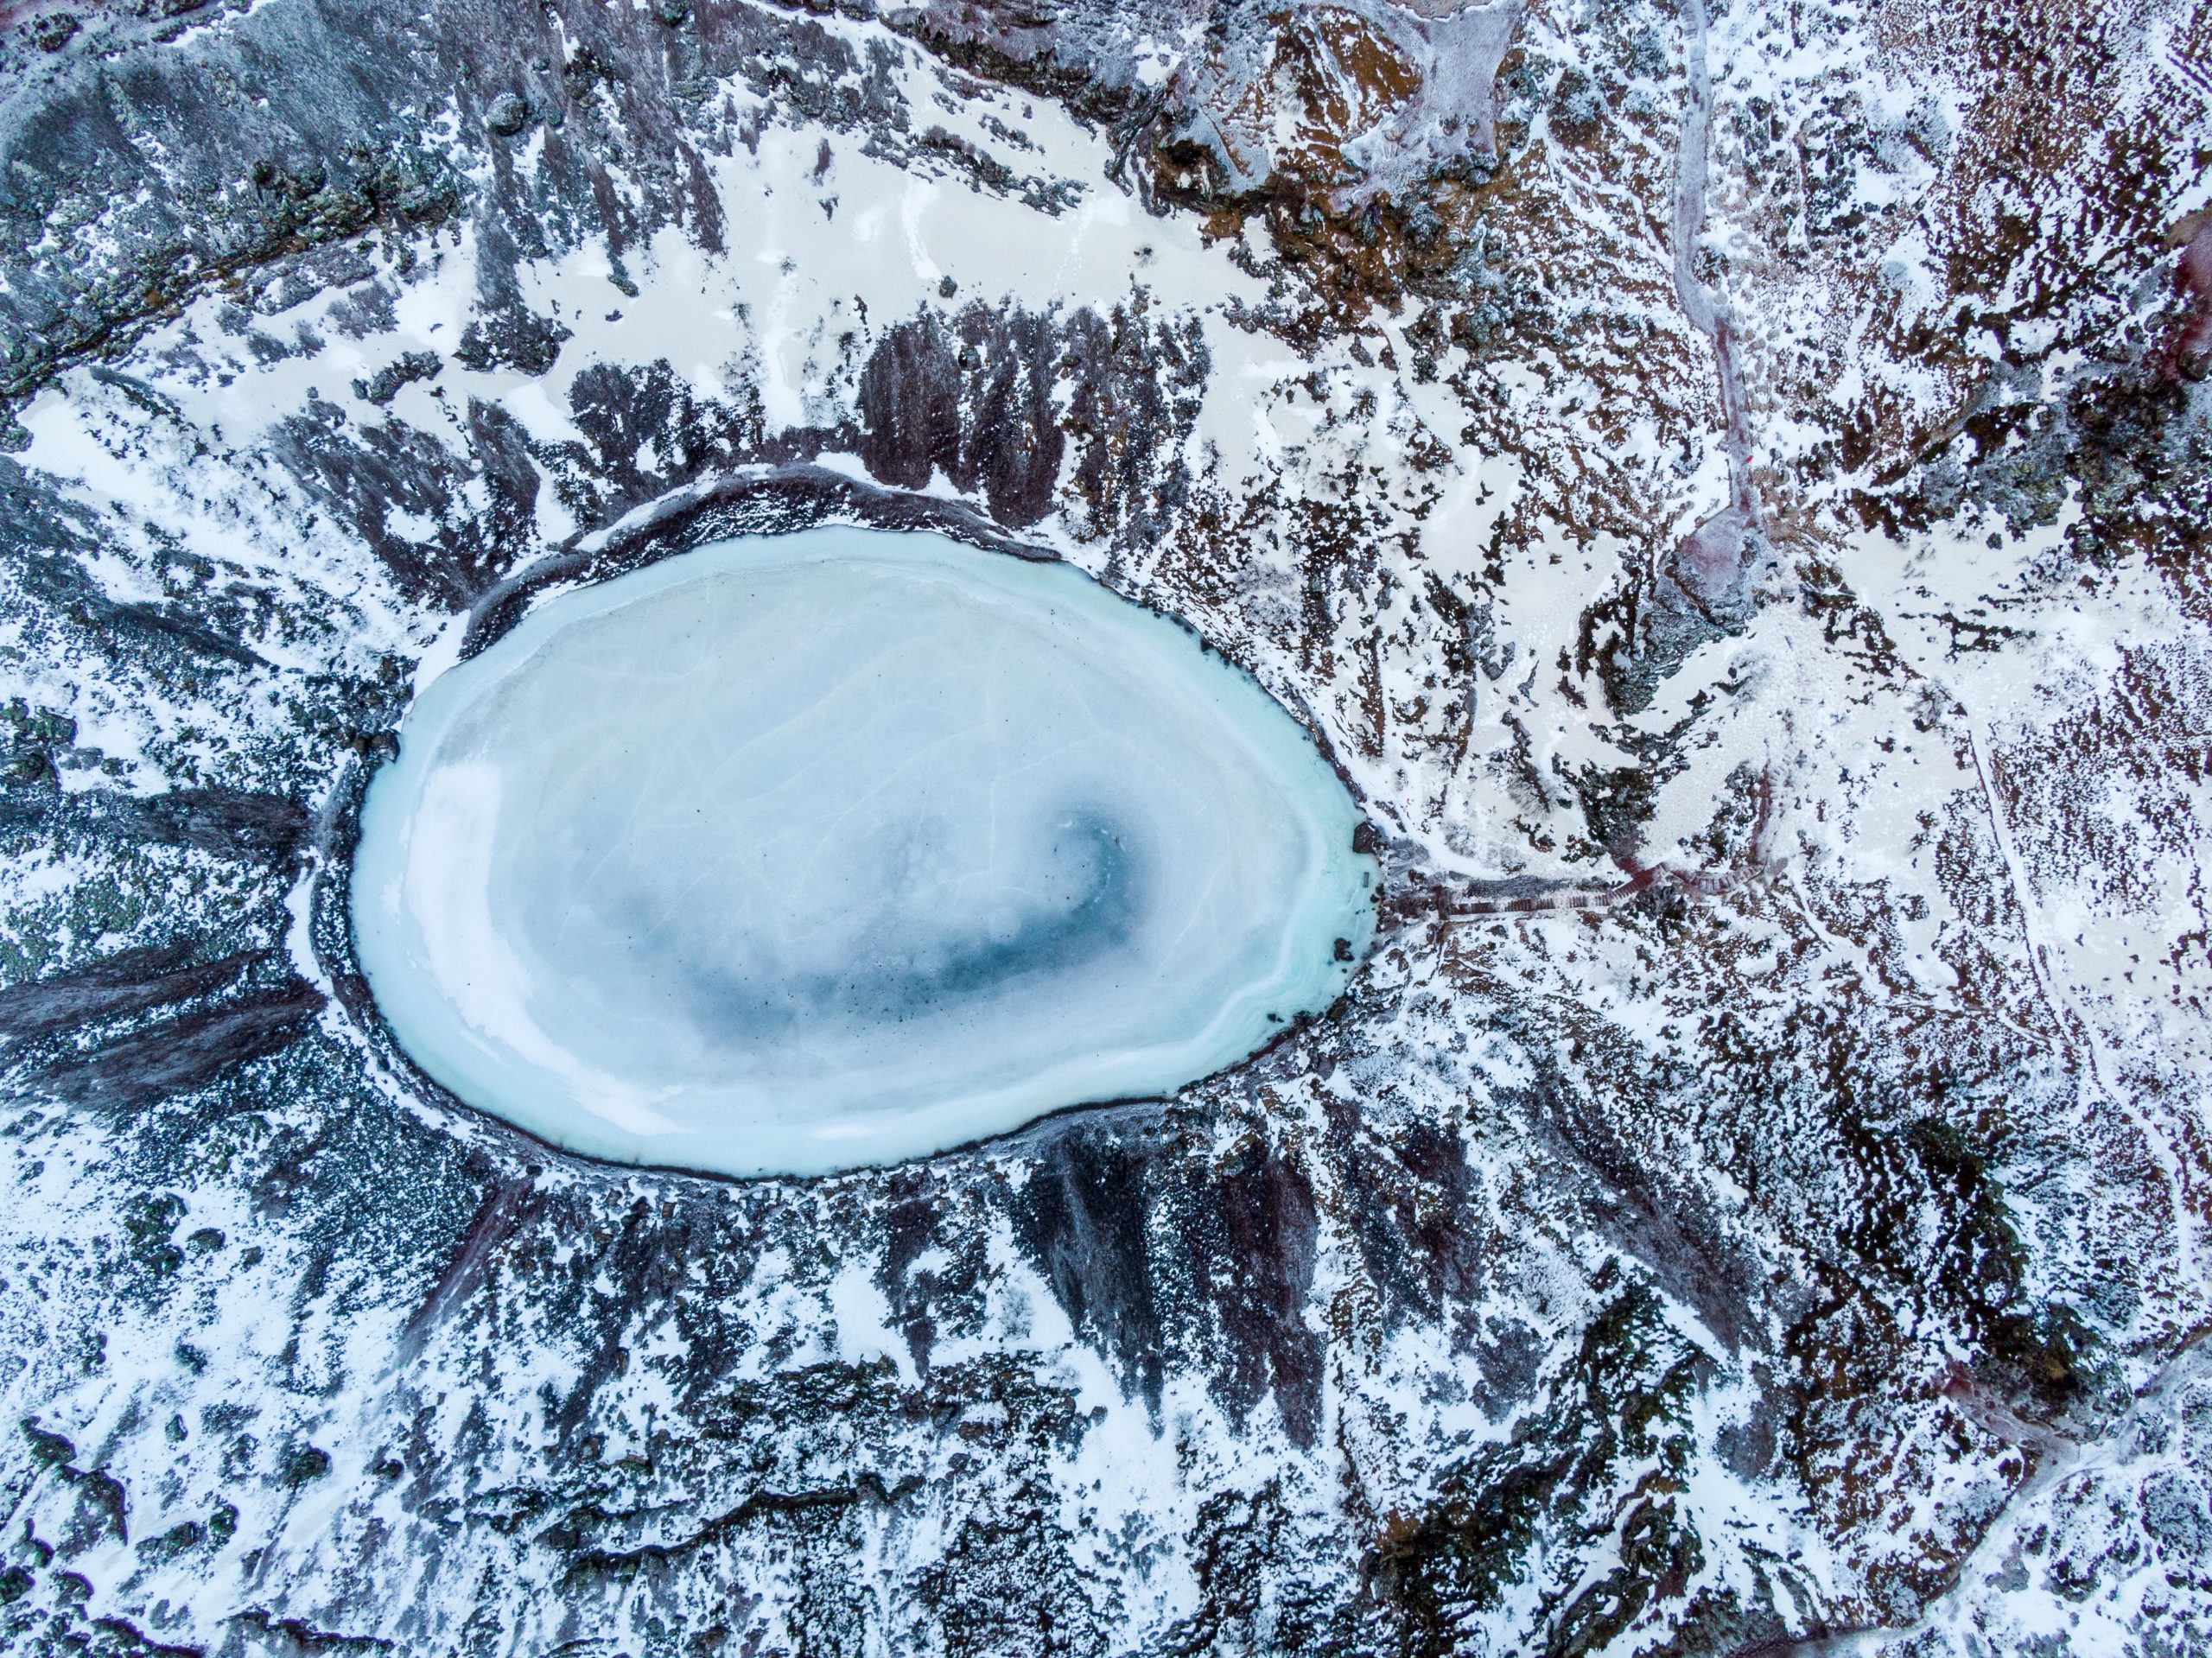 Kerid crater lake frozen in winter.